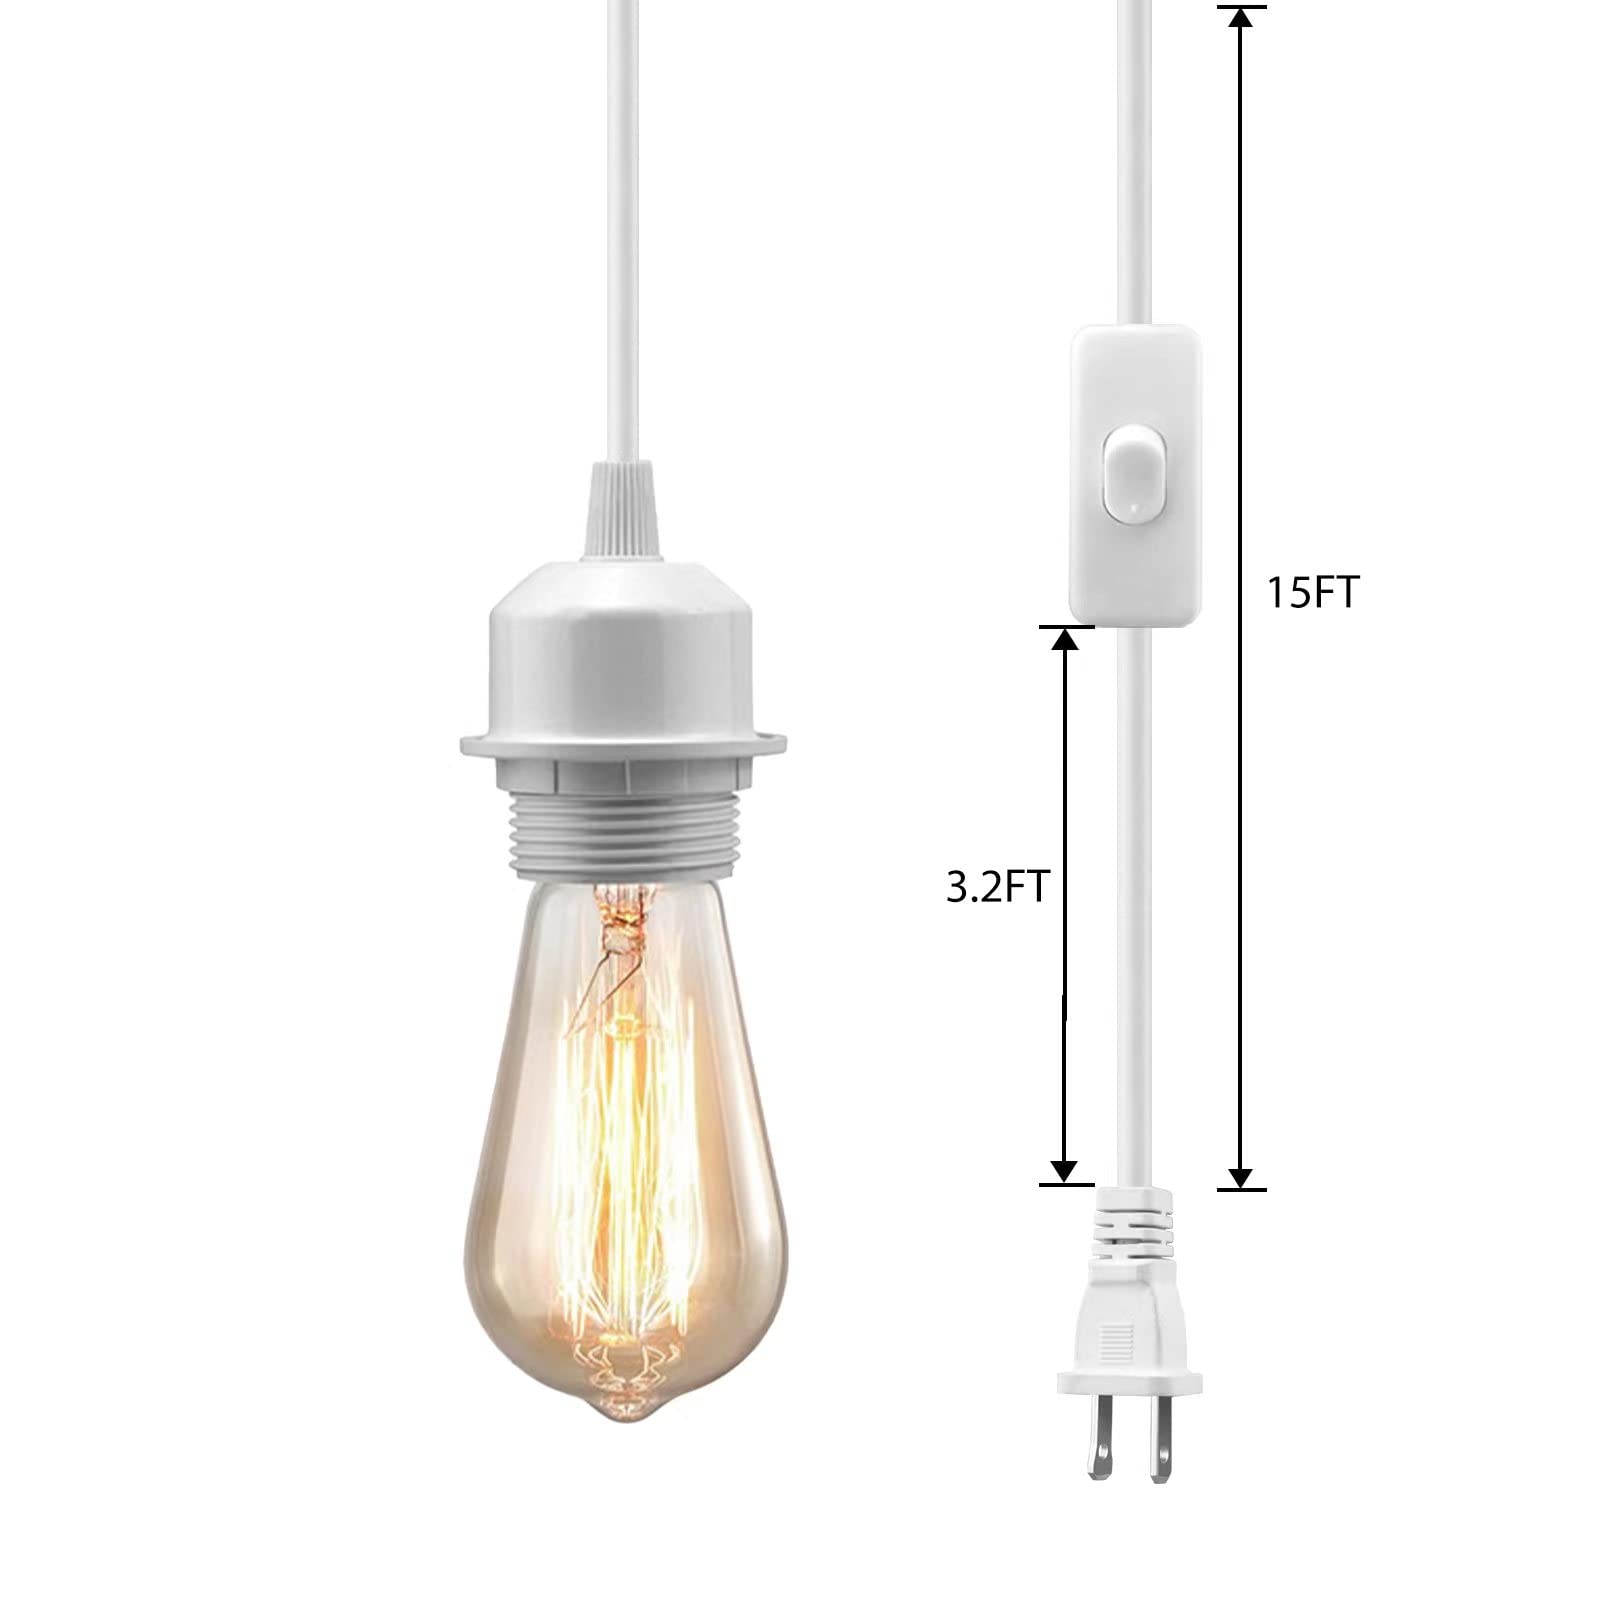 Plug in Hanging Light Kit, 15ft Pendant Light Cord On/Off Switch, E26 E27 Socket Lamp Cord, Pendant Lighting Fixture Hanging Lights with Plug in Cord, DIY Lamp Cord Kit